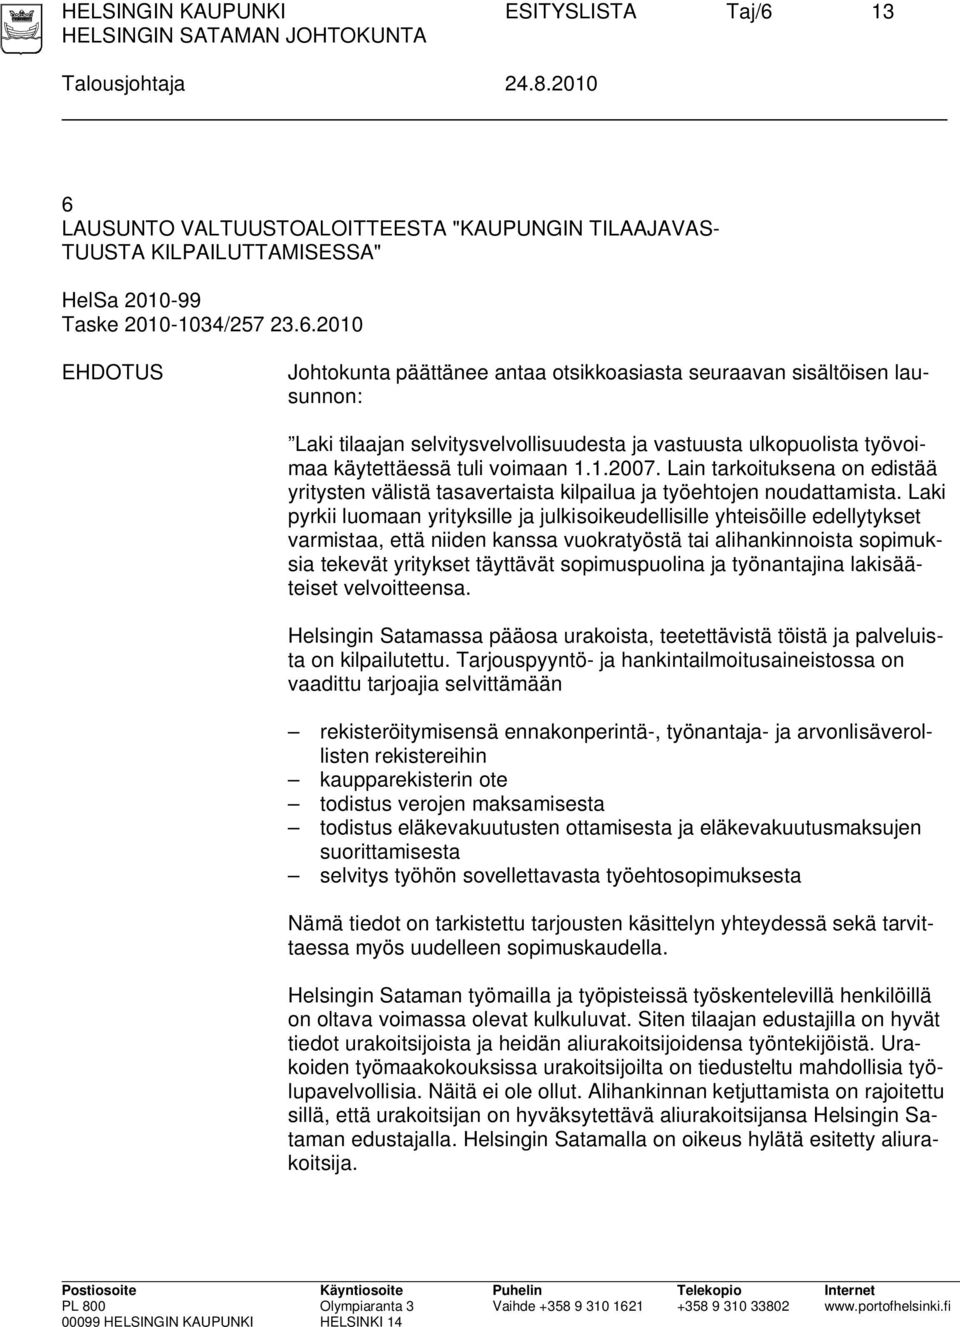 LAUSUNTO VALTUUSTOALOITTEESTA "KAUPUNGIN TILAAJAVAS- TUUSTA KILPAILUTTAMISESSA" HelSa 2010-99 Taske 2010-1034/257 23.6.